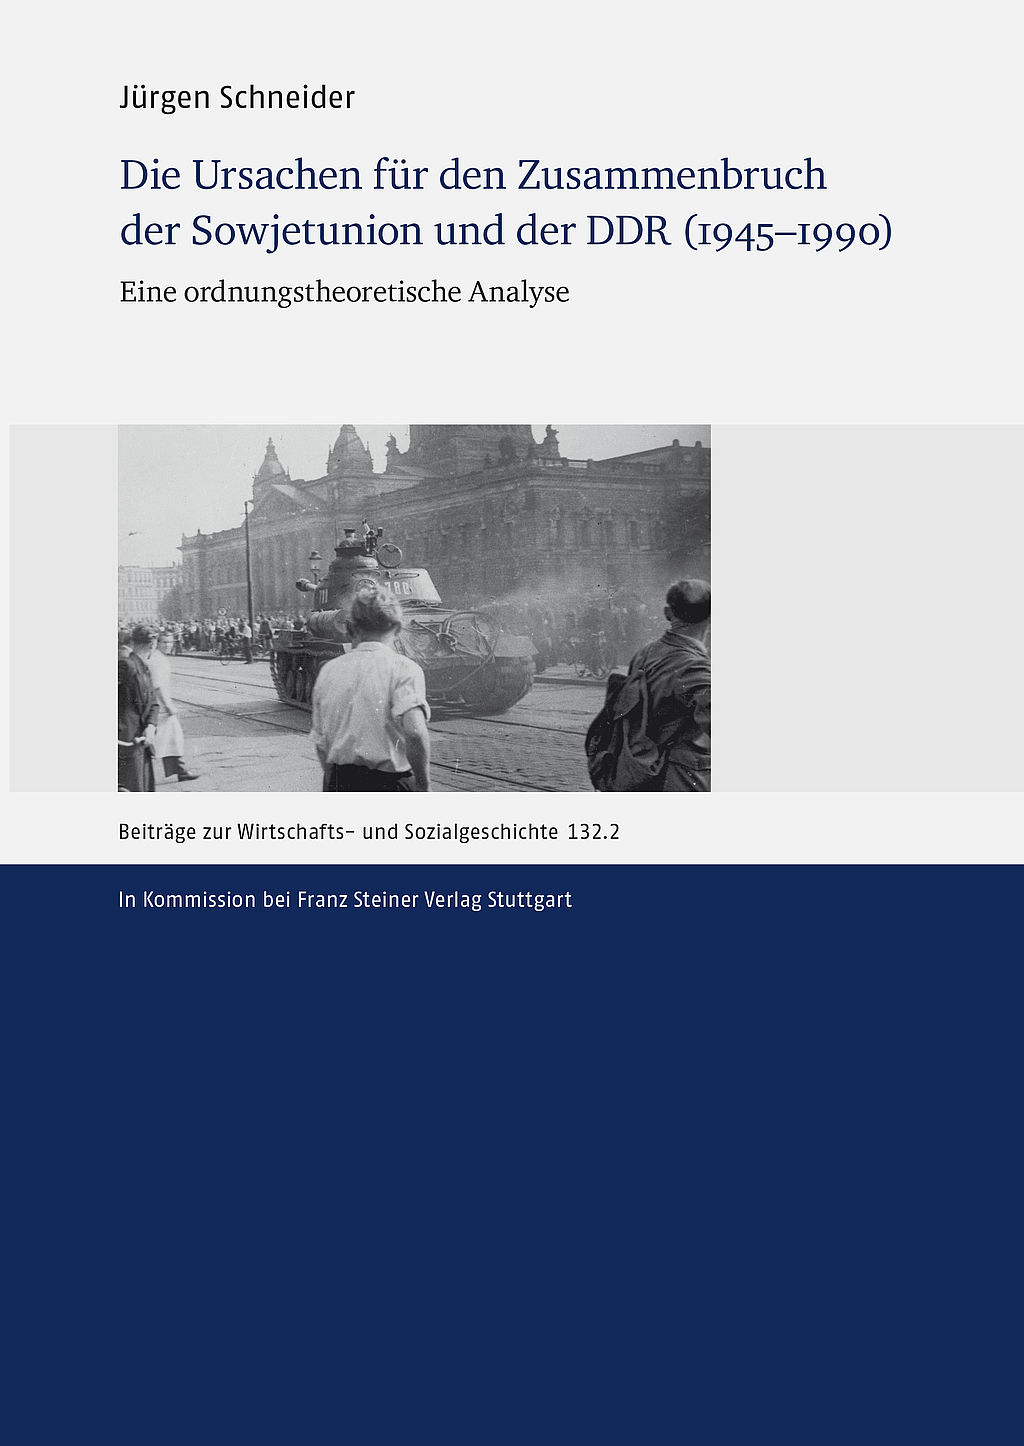 cover_schneider_ursachen-zusammenbruch-sowjetunion-ddr.jpg